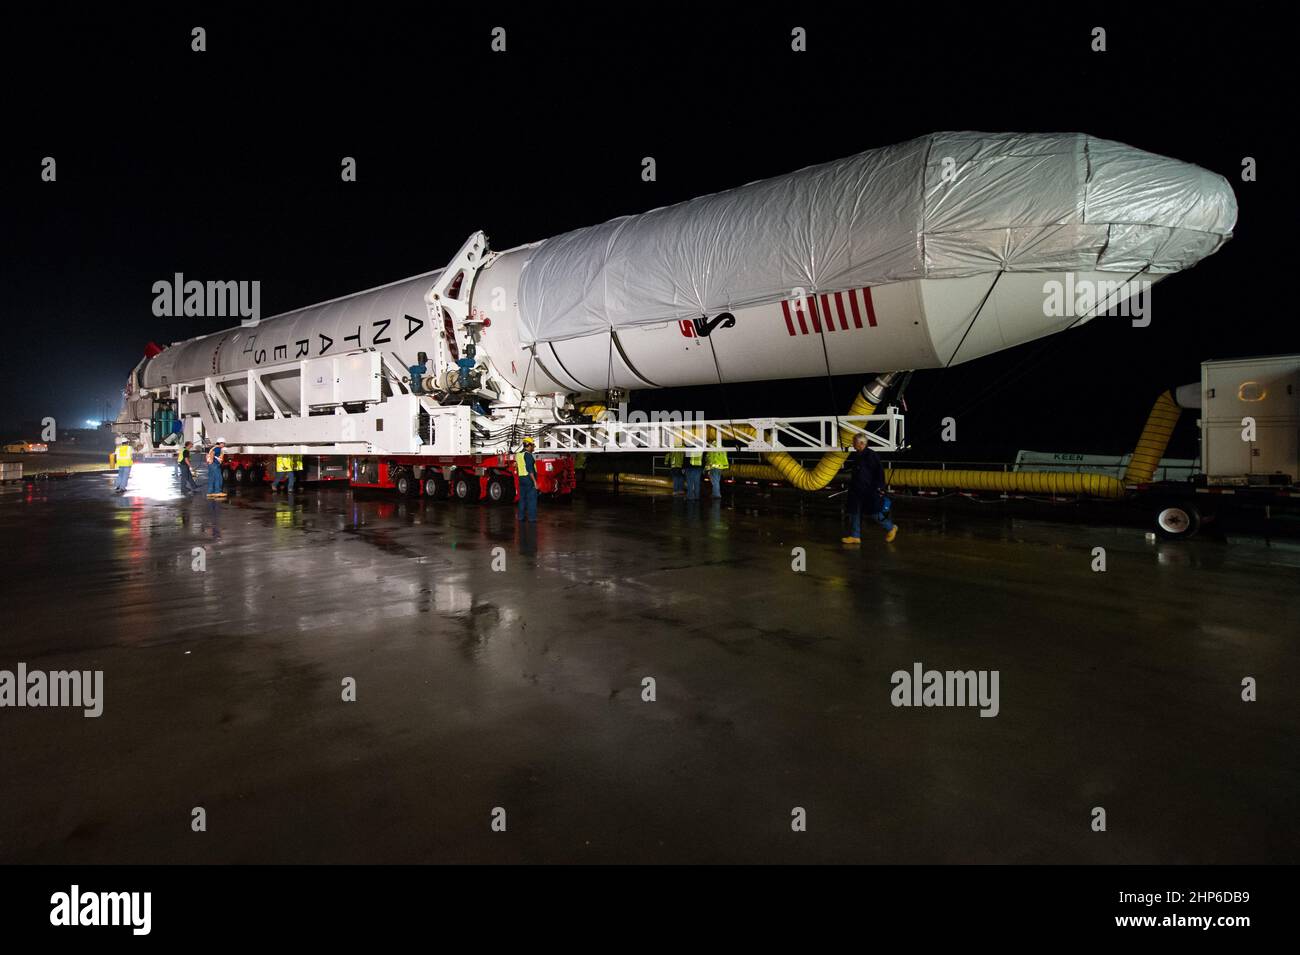 Il razzo Orbital Sciences Corporation Antares, con la navicella spaziale Cygnus a bordo, è stato lanciato fuori dalla HIF (Horizontal Integration Facility) per fare il viaggio di circa mezzo miglio per lanciare Pad-0A, giovedì 10 luglio 2014, presso la NASA's Wallops Flight Facility in Virginia. Foto Stock